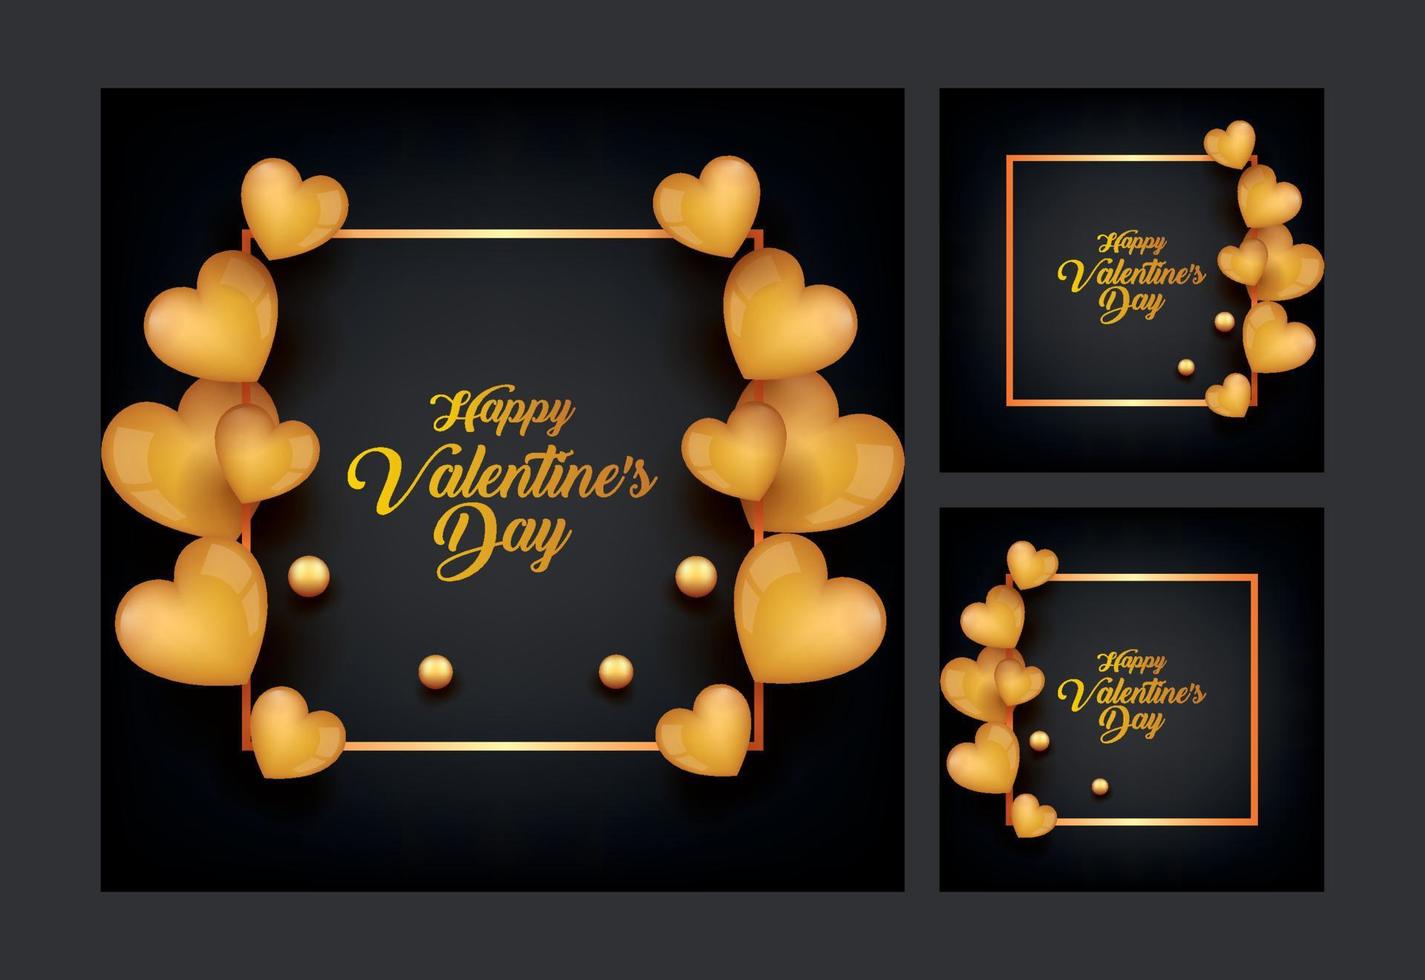 14 de febrero plantilla de redes sociales de tarjeta de felicitación del día de san valentín vector